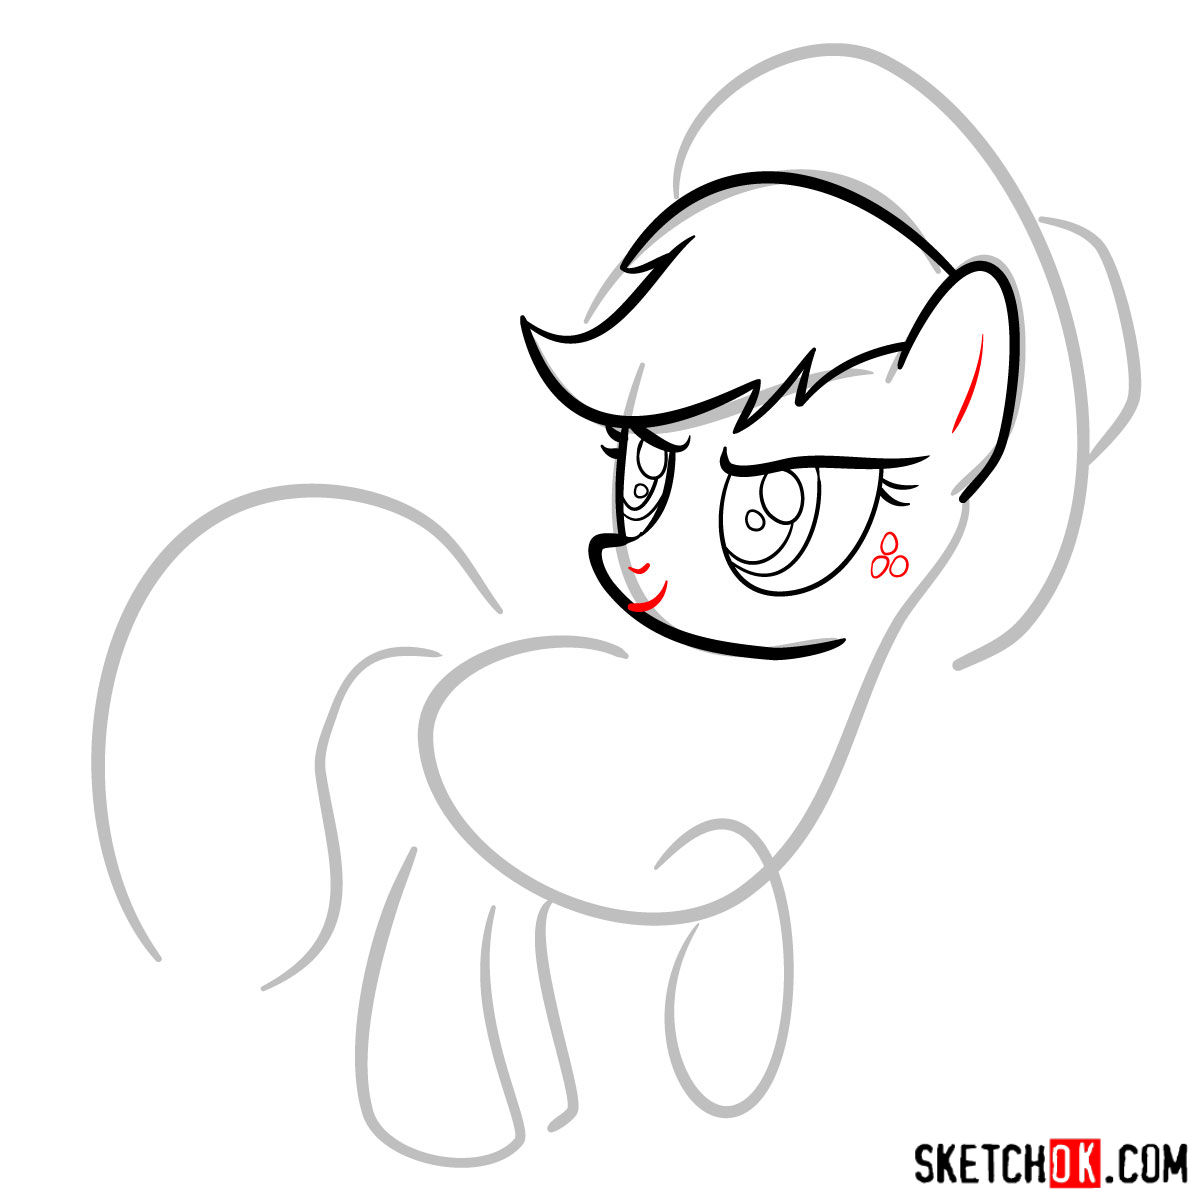 How to draw Applejack pony - step 05